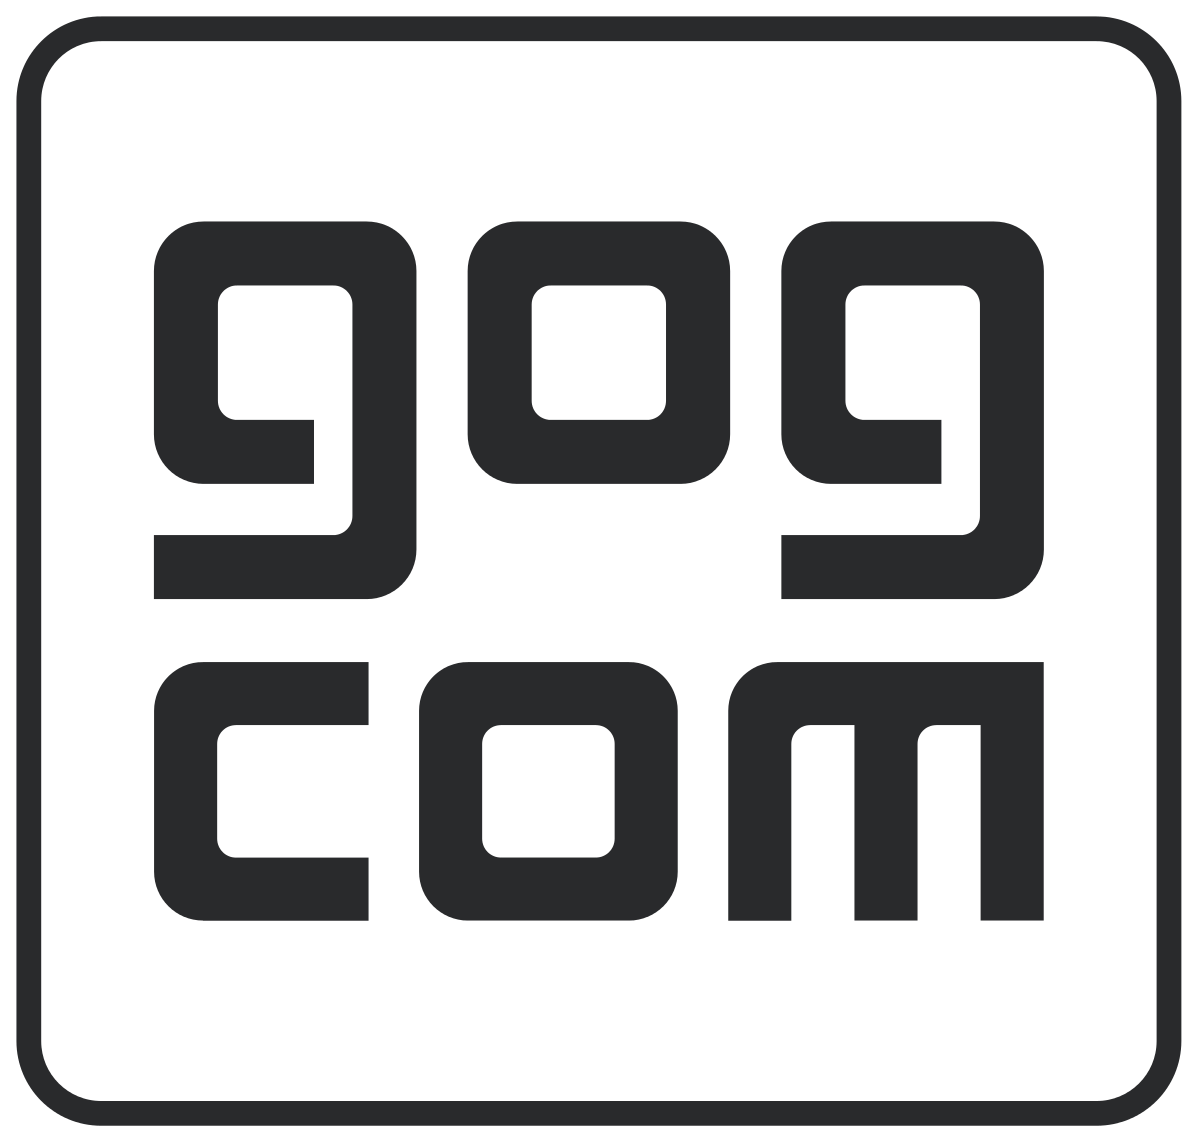 File:Steam logo.svg - Wikipedia